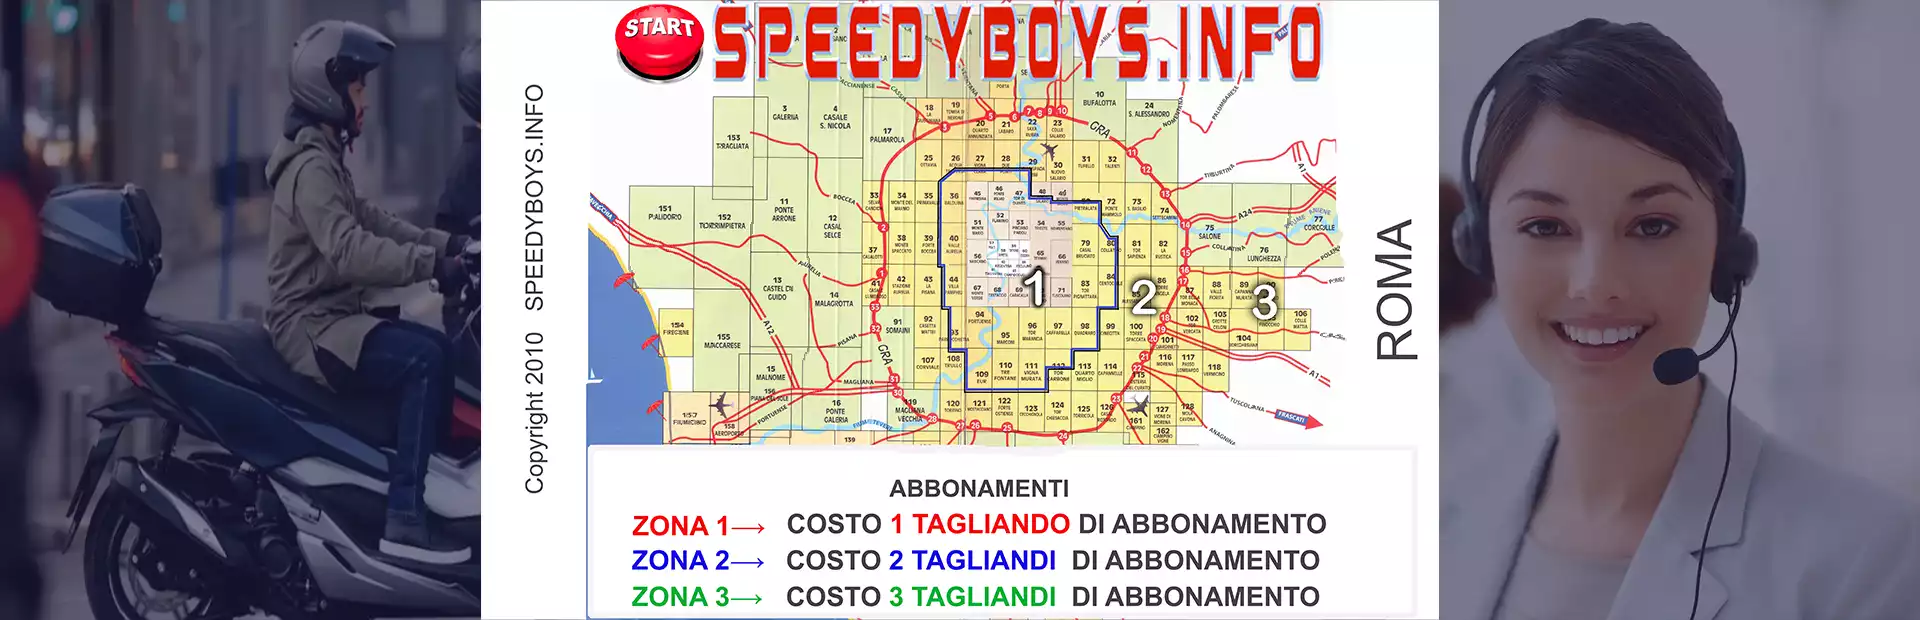 speedyboys.info-abbonamento